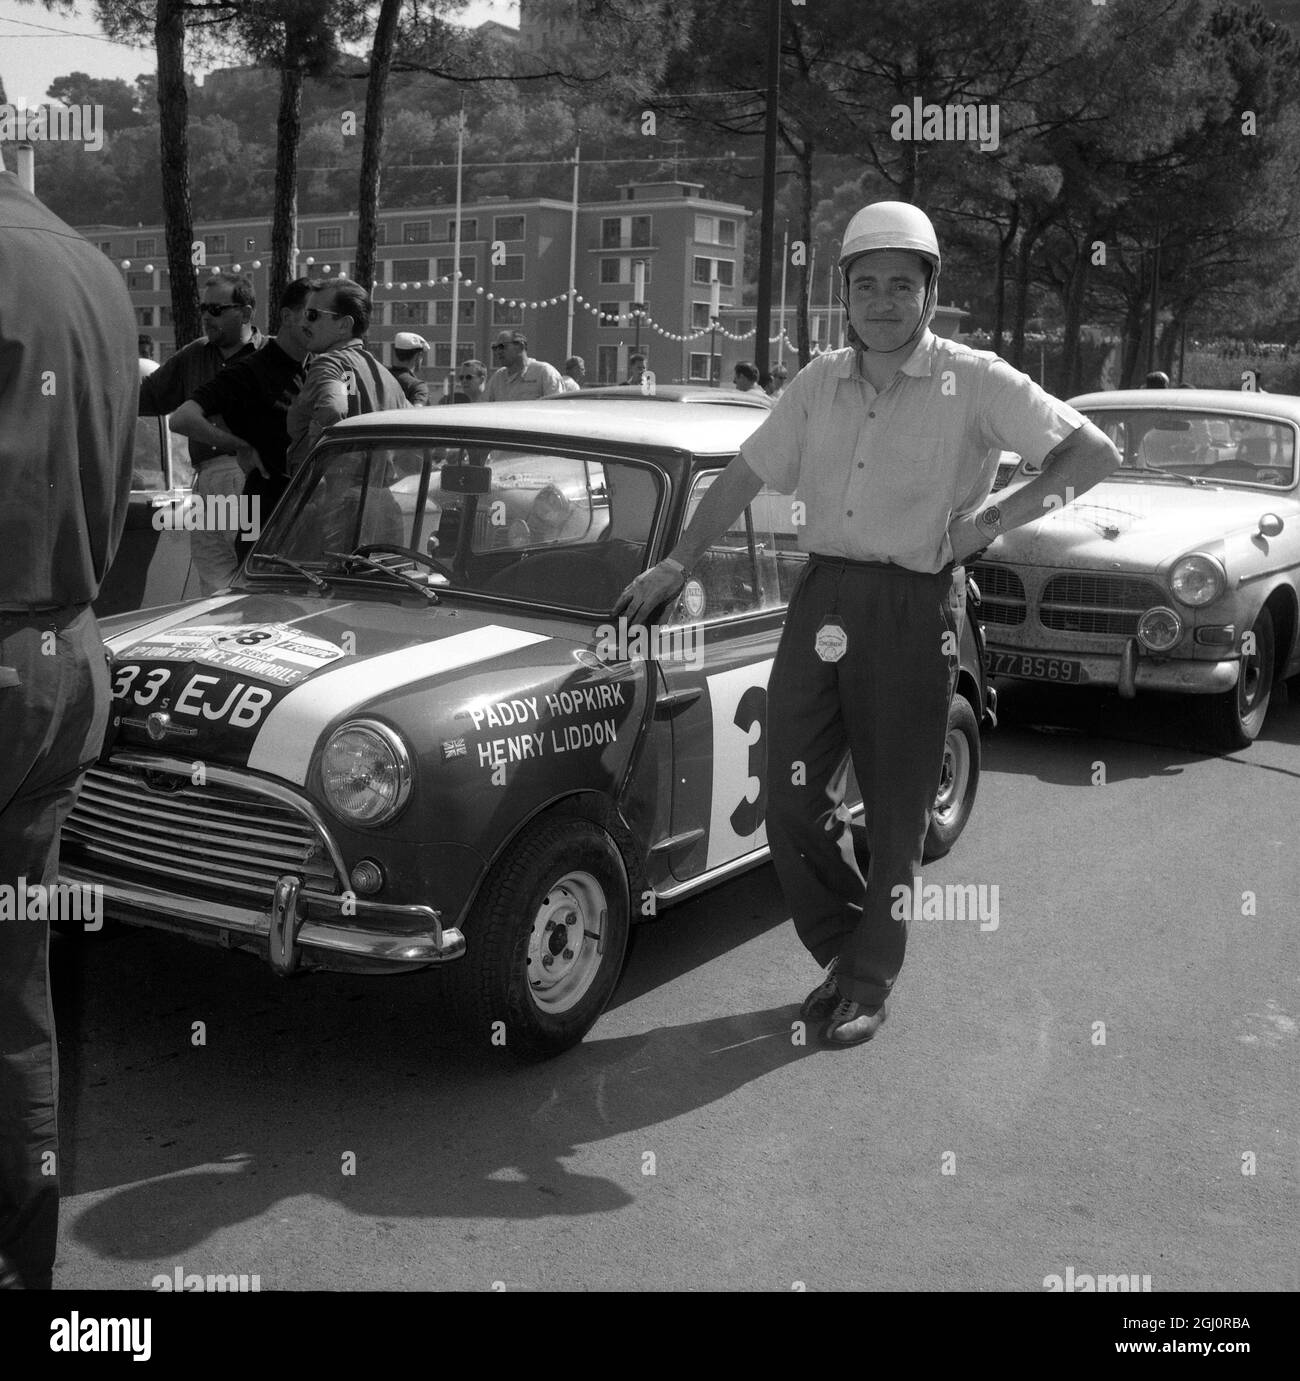 Der britische Paddy Hopkirk steht neben seinem Morris Cooper, nachdem er in der Handicap-Wertung des Tour de france-Motorrennens hier in Nizza, Frankreich, den ersten Platz erreicht hat. Der Morris-Cooper wurde am 24. September 1963 von Henry Liddon mitgefahren Stockfoto